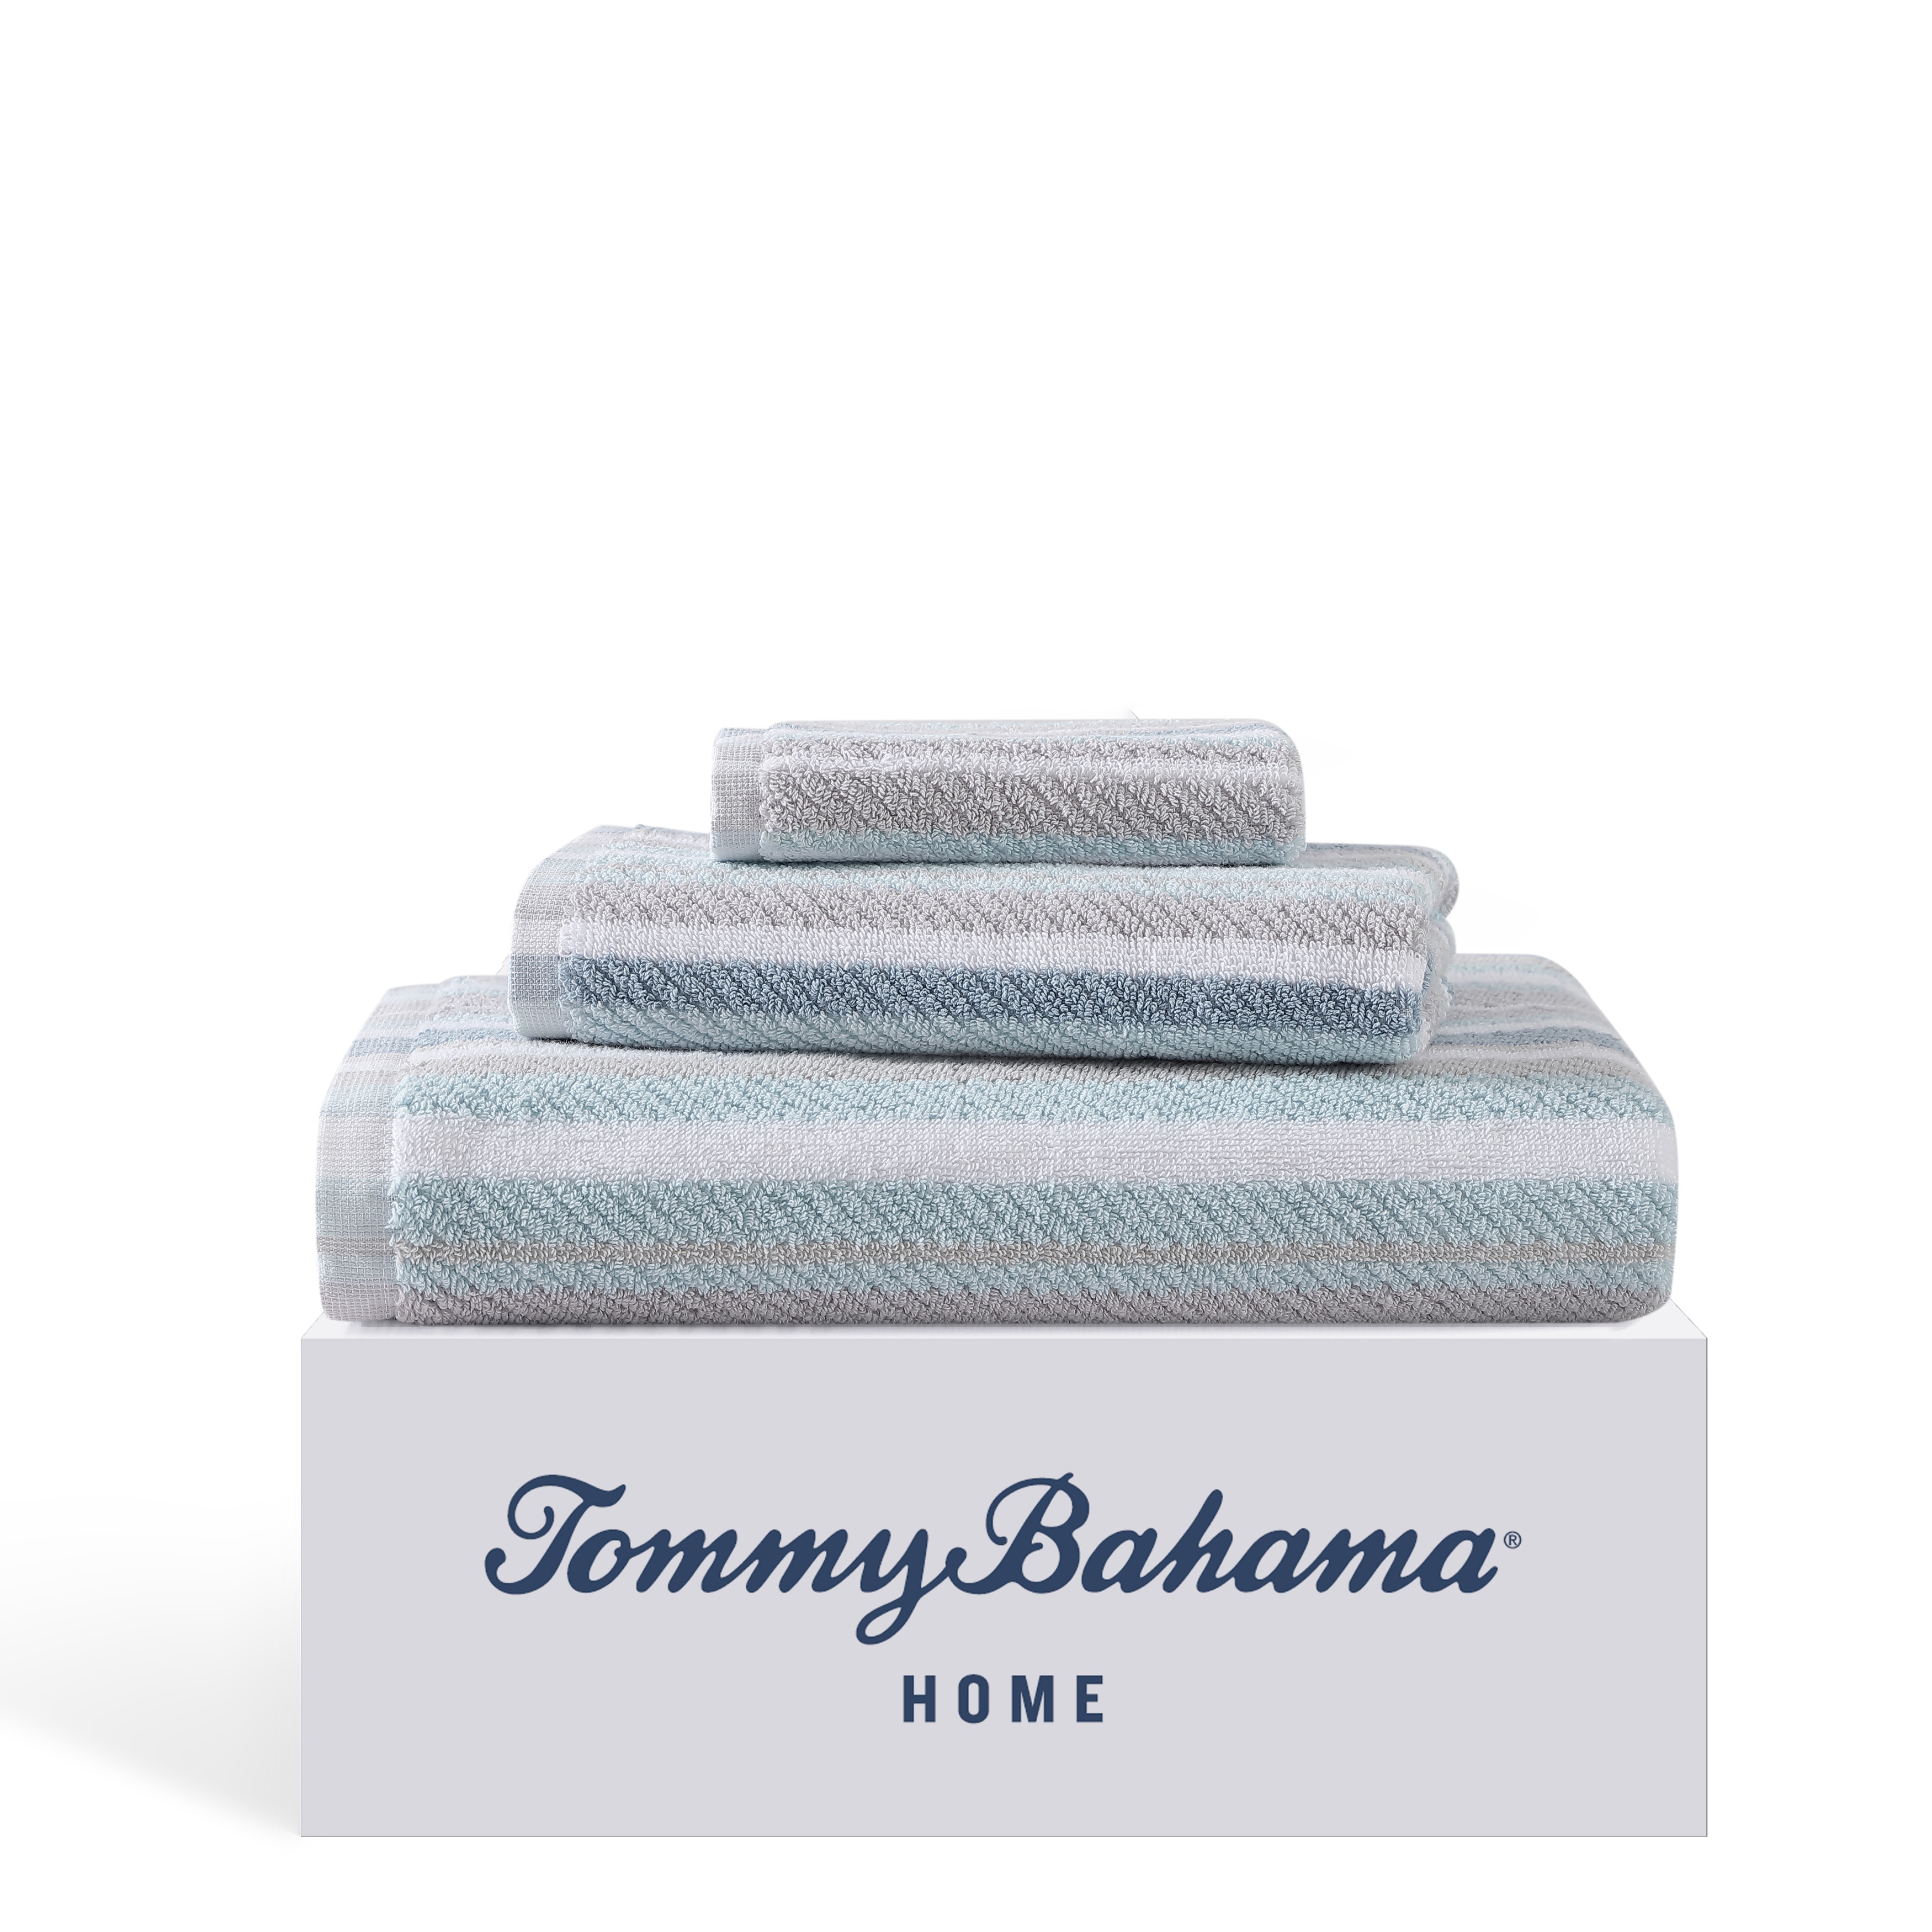 tommy bahama towel set - 8pc - tommy bahama towels